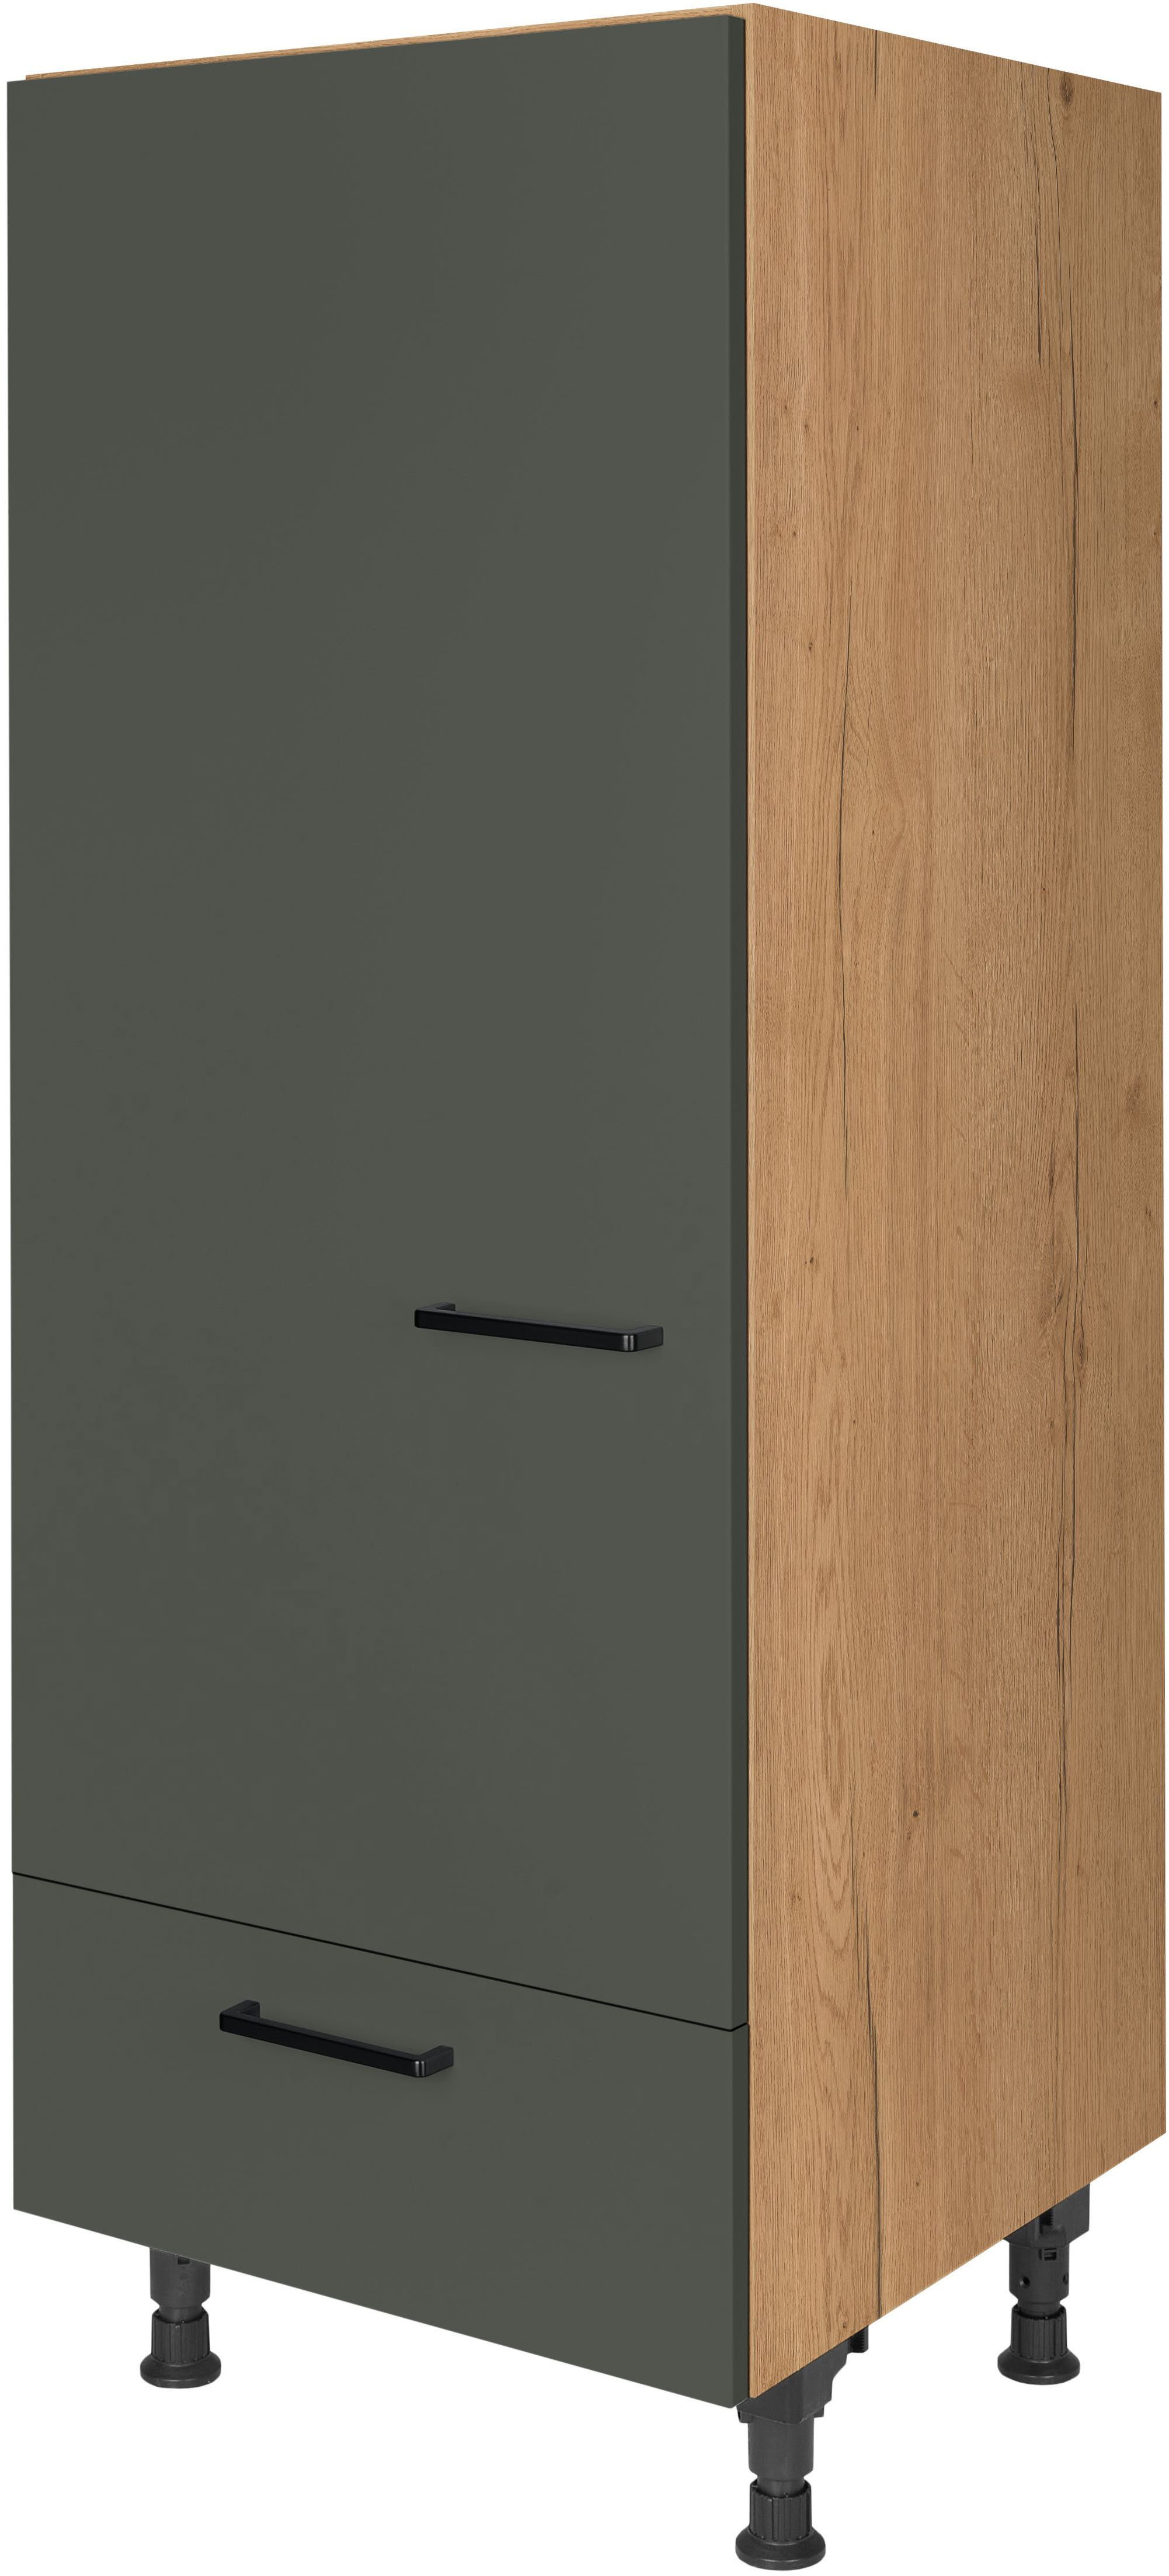 nobilia® Kühlumbauschrank "Easytouch", Ausrichtung wählbar, mit Schubkasten, vormontiert, Breite/Höhe: 60/167,8 cm